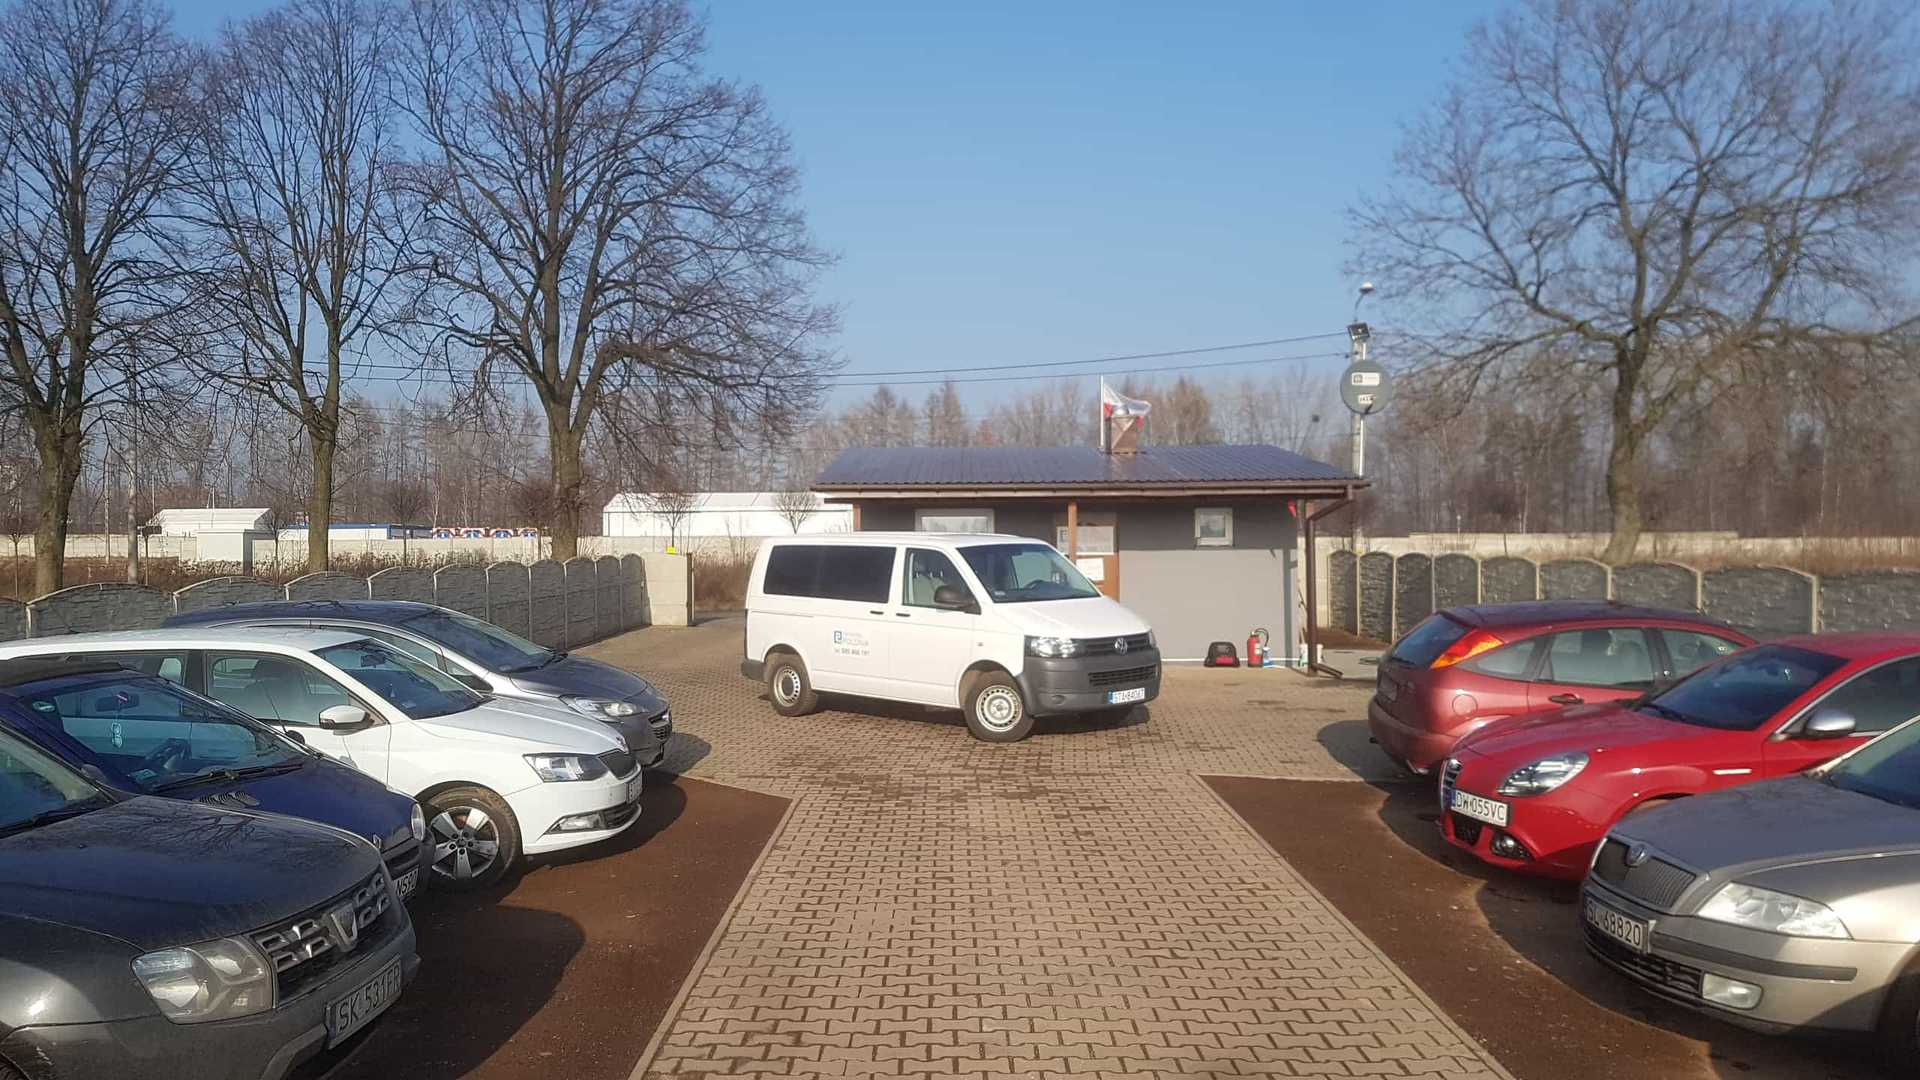 Polonia - zdjęcie parkingu